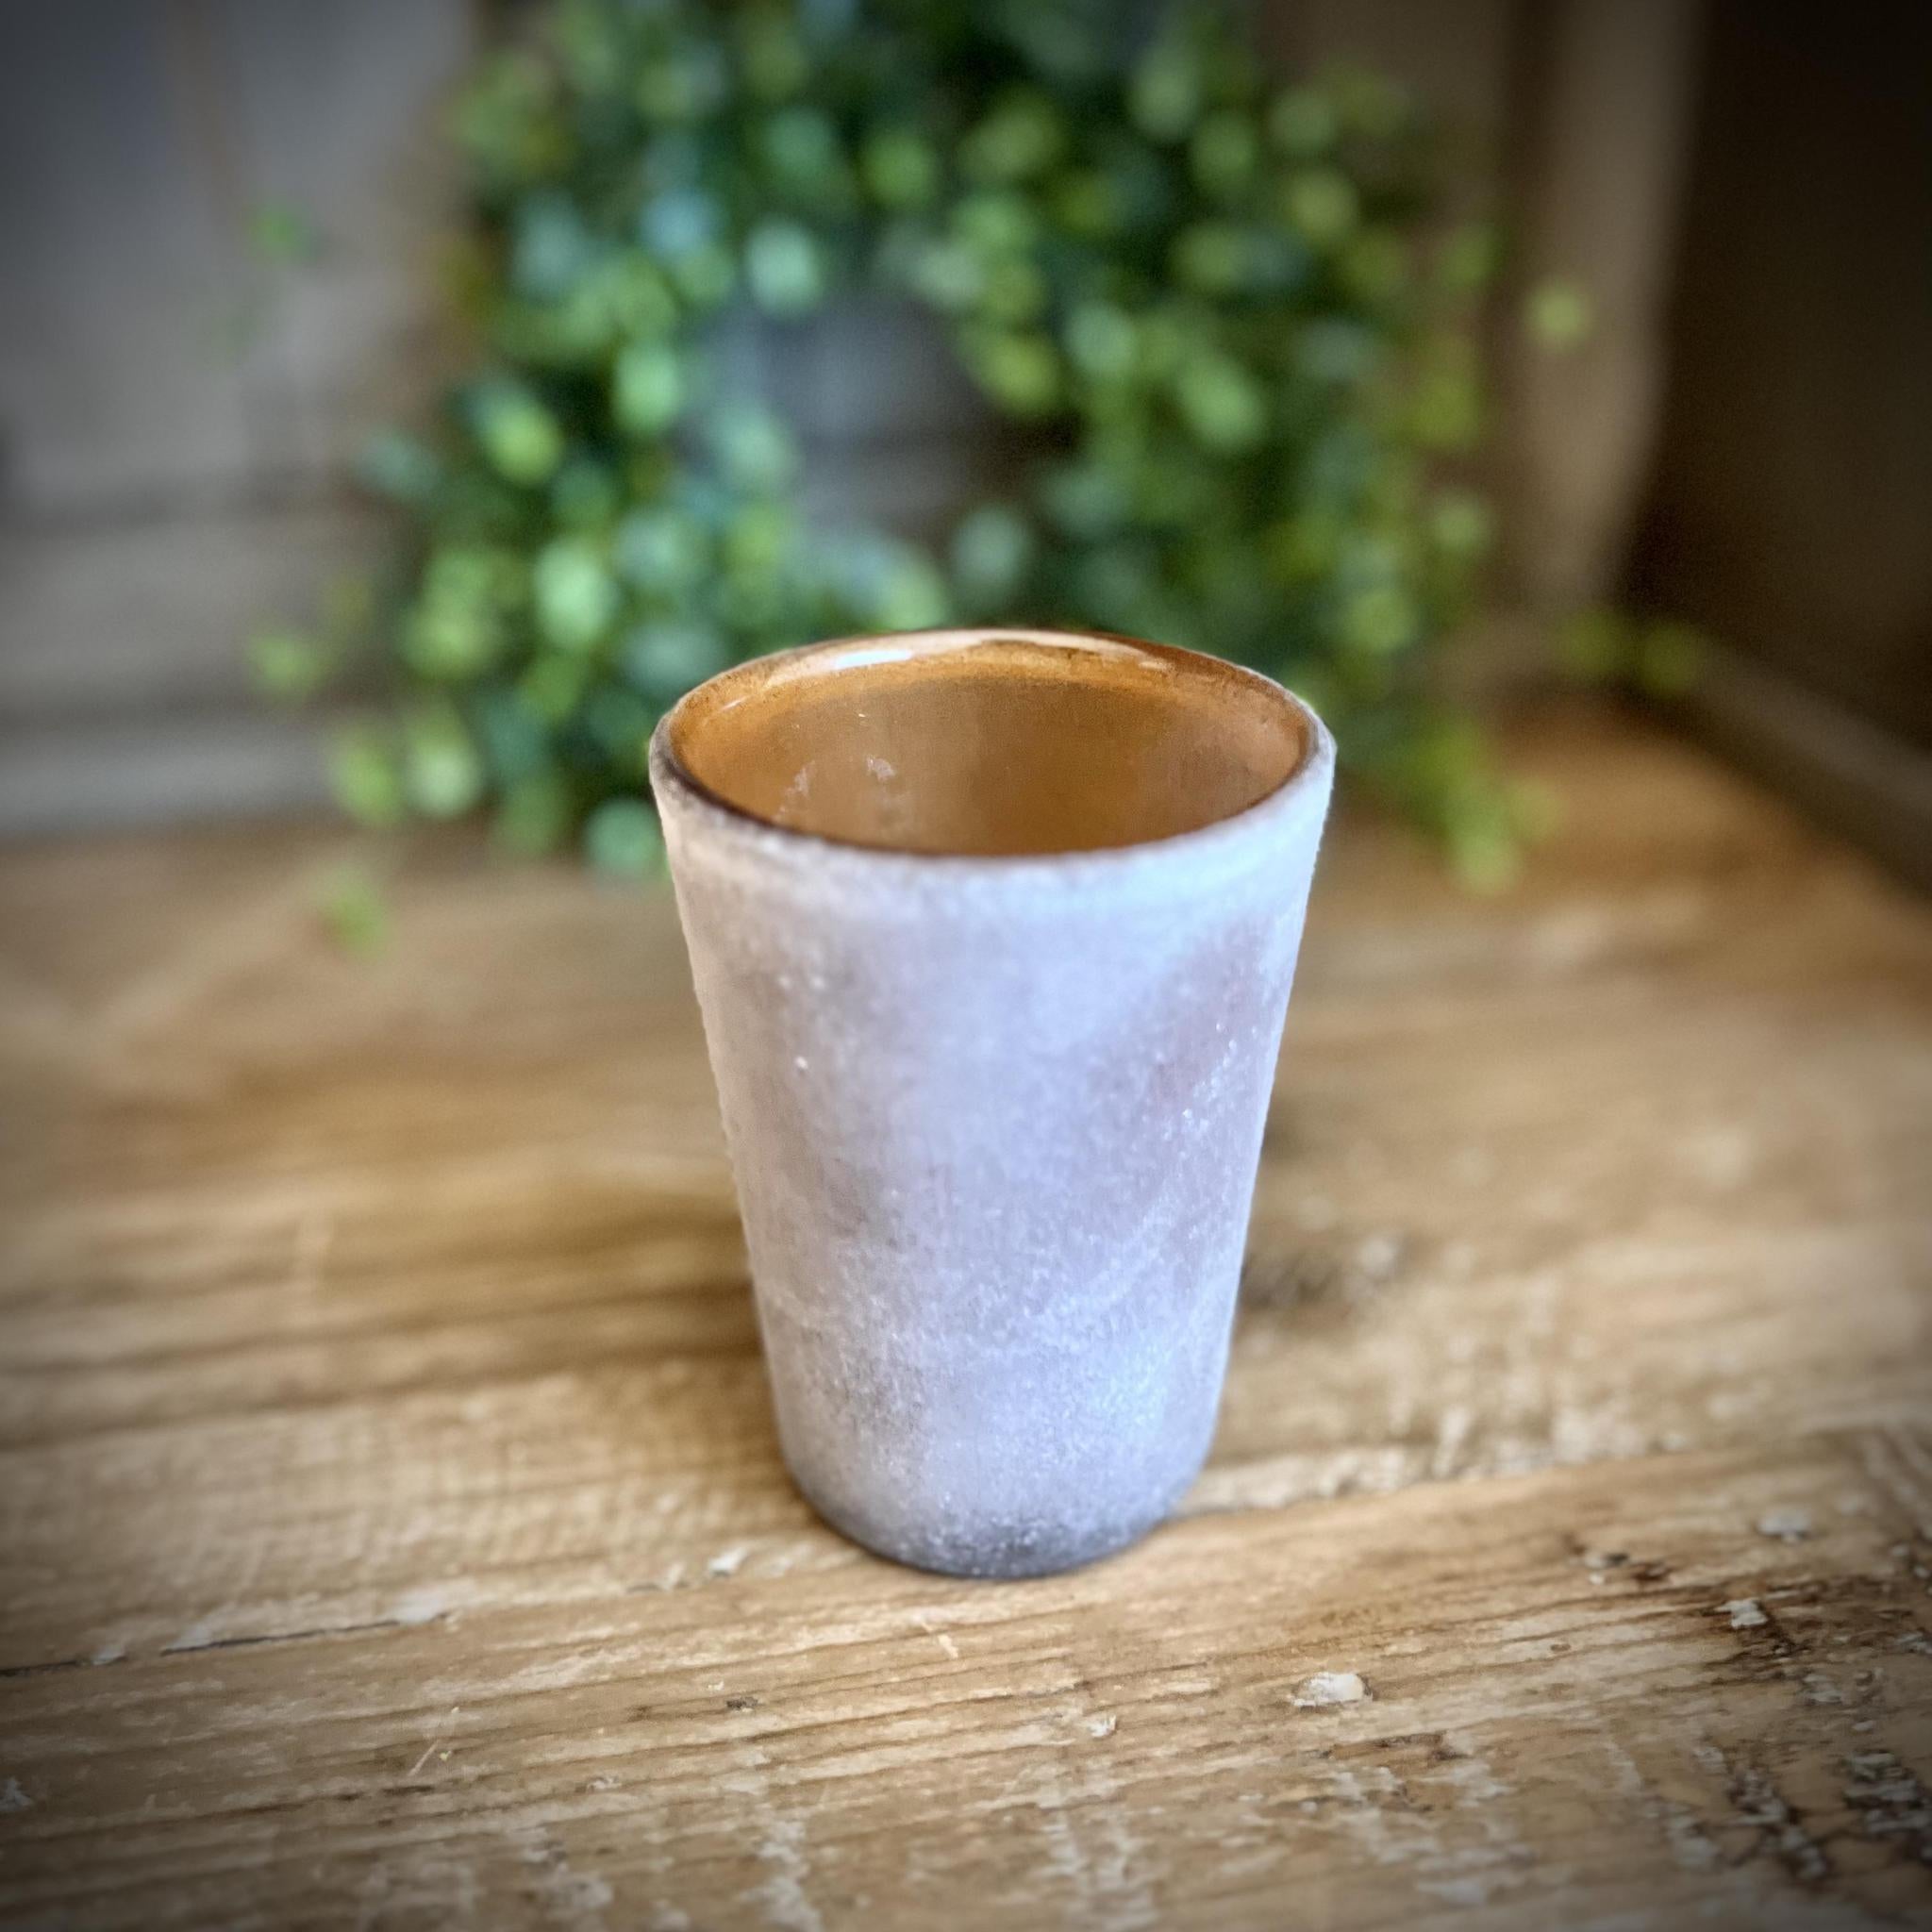 Terra Aged Glass Vase - 3"Di x 4"H